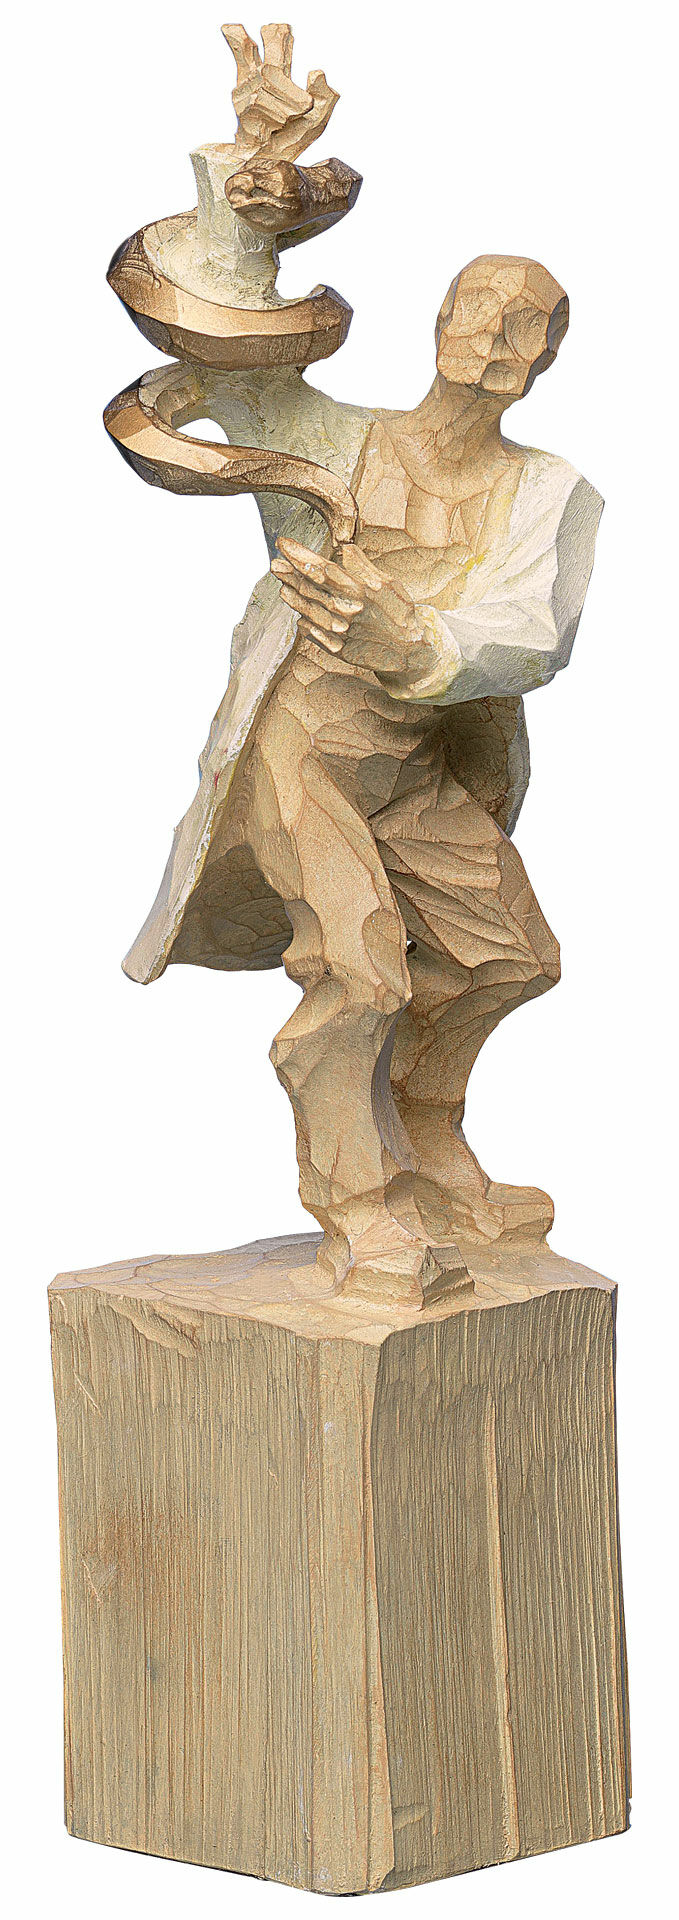 Skulptur "Doktor", gjuten träfinish von Roman Johann Strobl